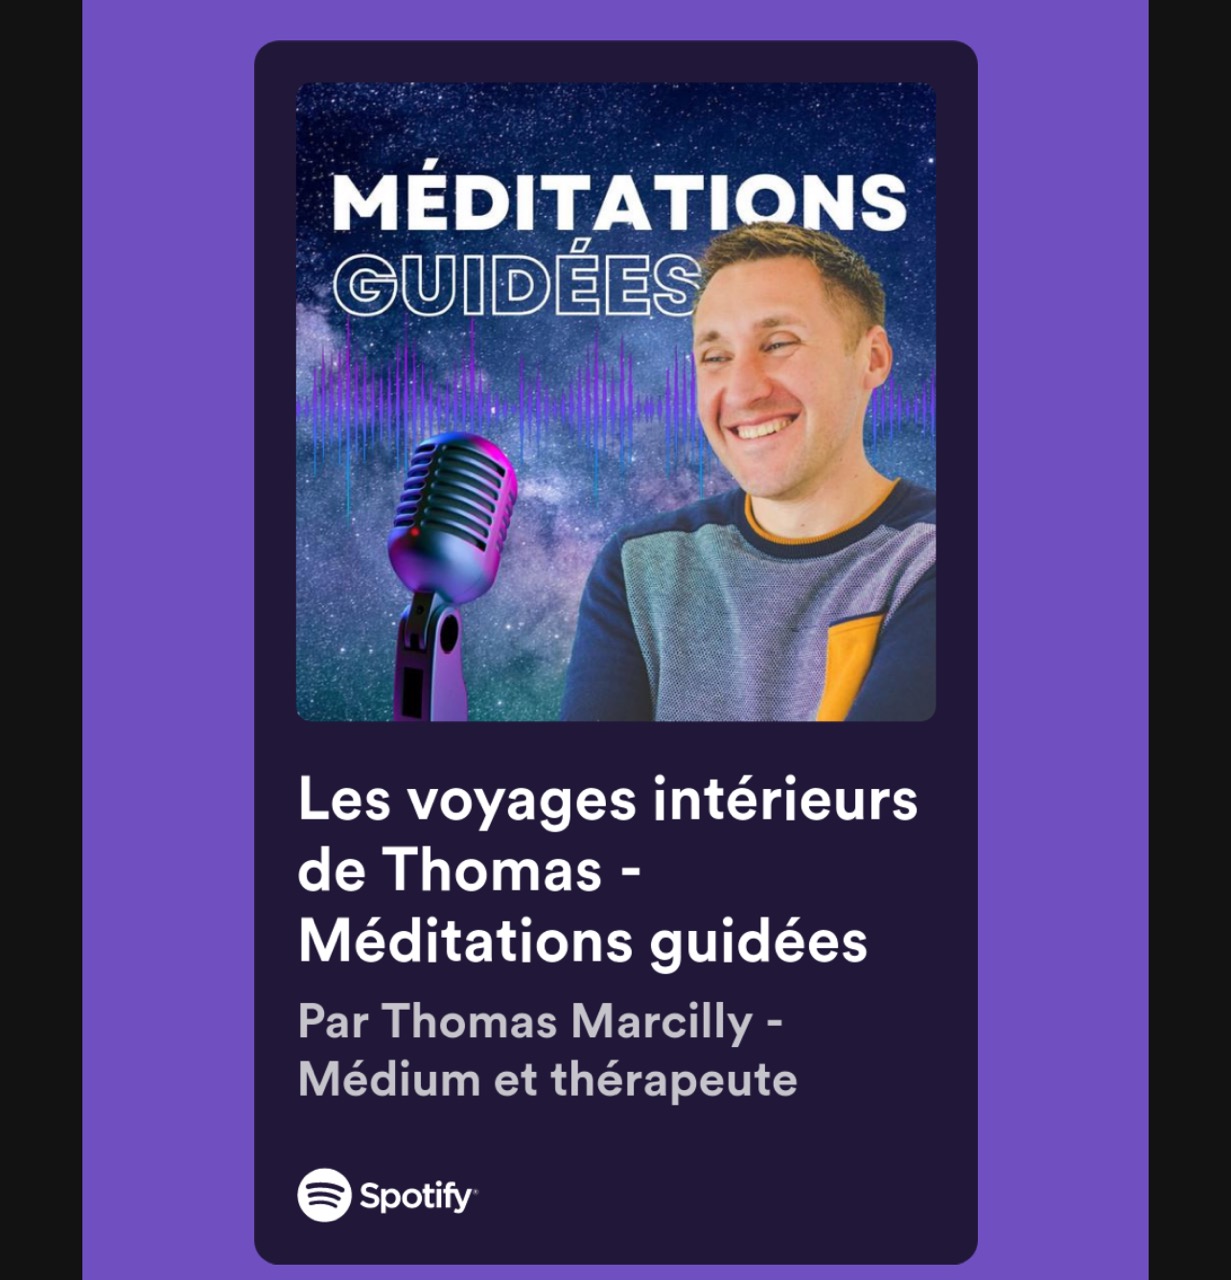 meditations ” les voyages intérieurs de Thomas”